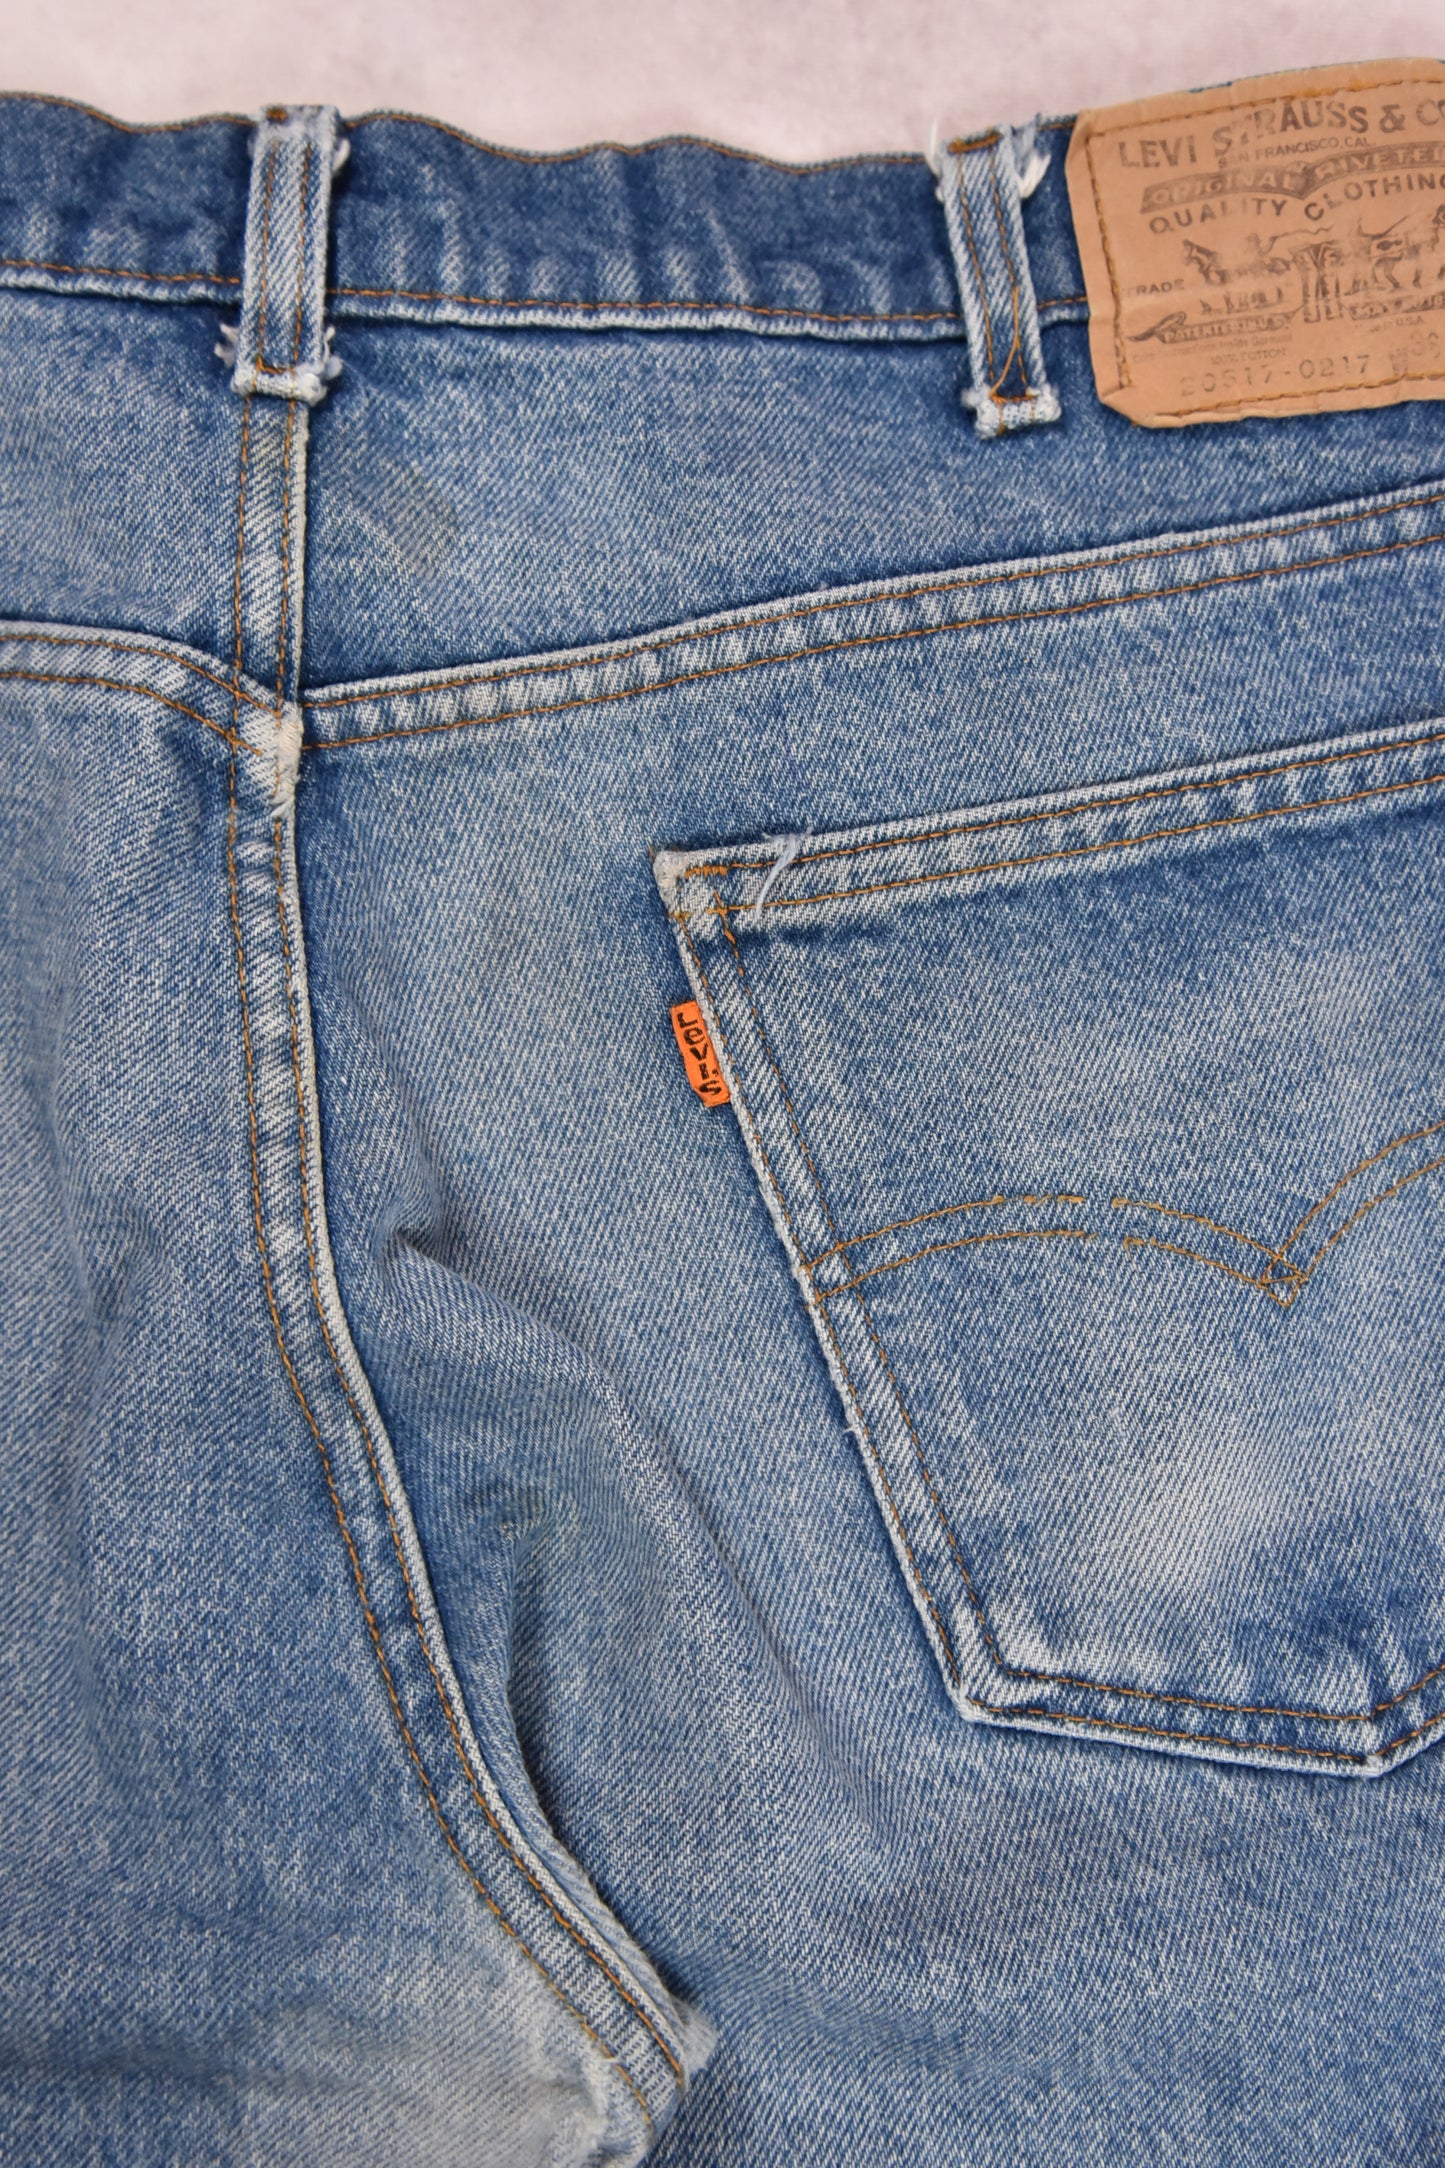 Levi's 517 Orange Tab Jeans Vintage / 36x33